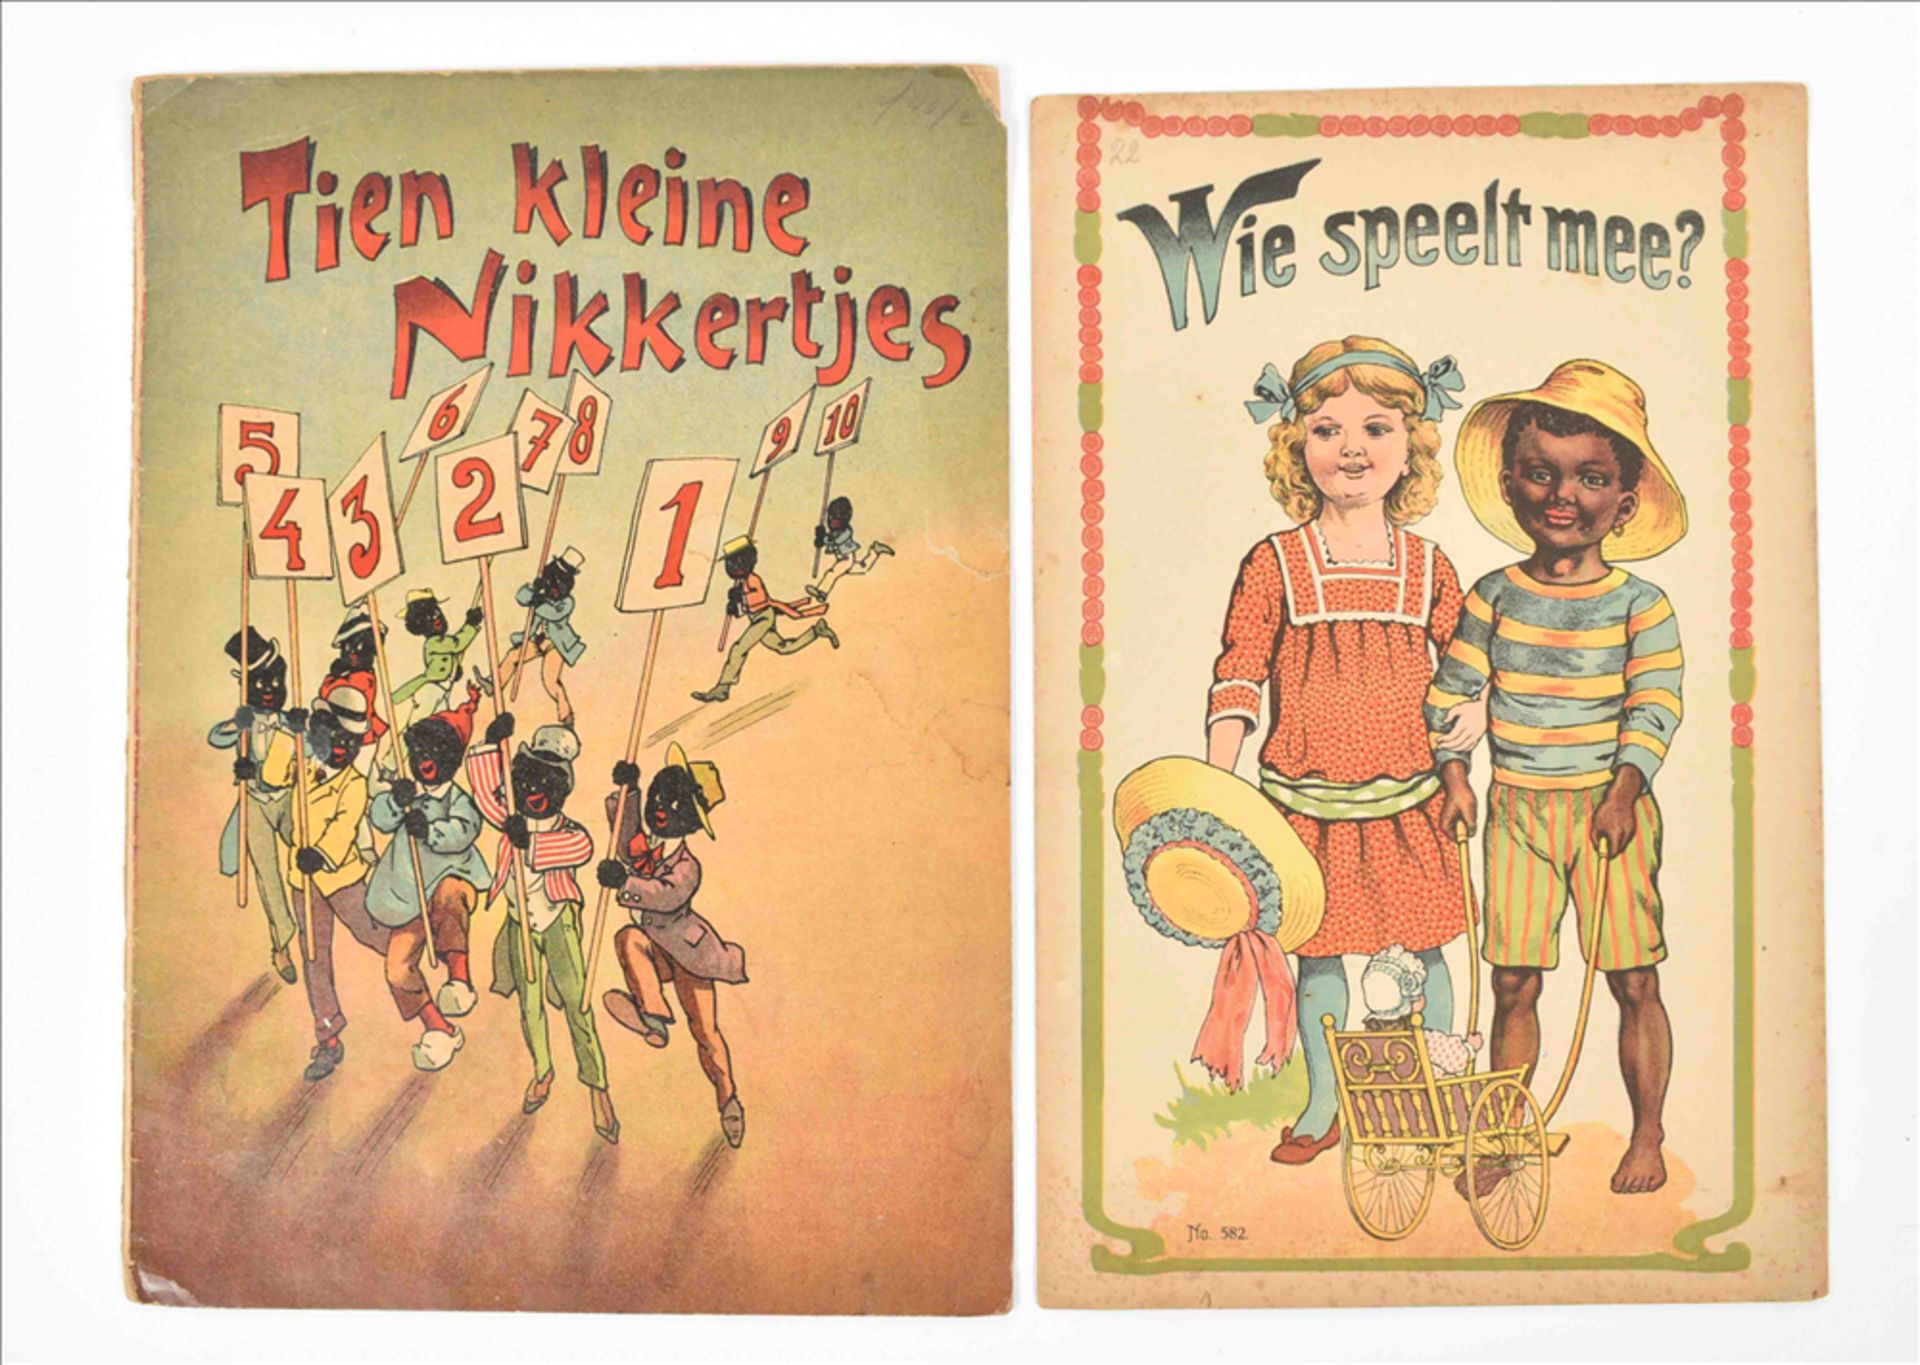 [Black interest] Fourteen late 19th century Dutch children's books: (1) Tien kleine nikkertjes - Image 5 of 16